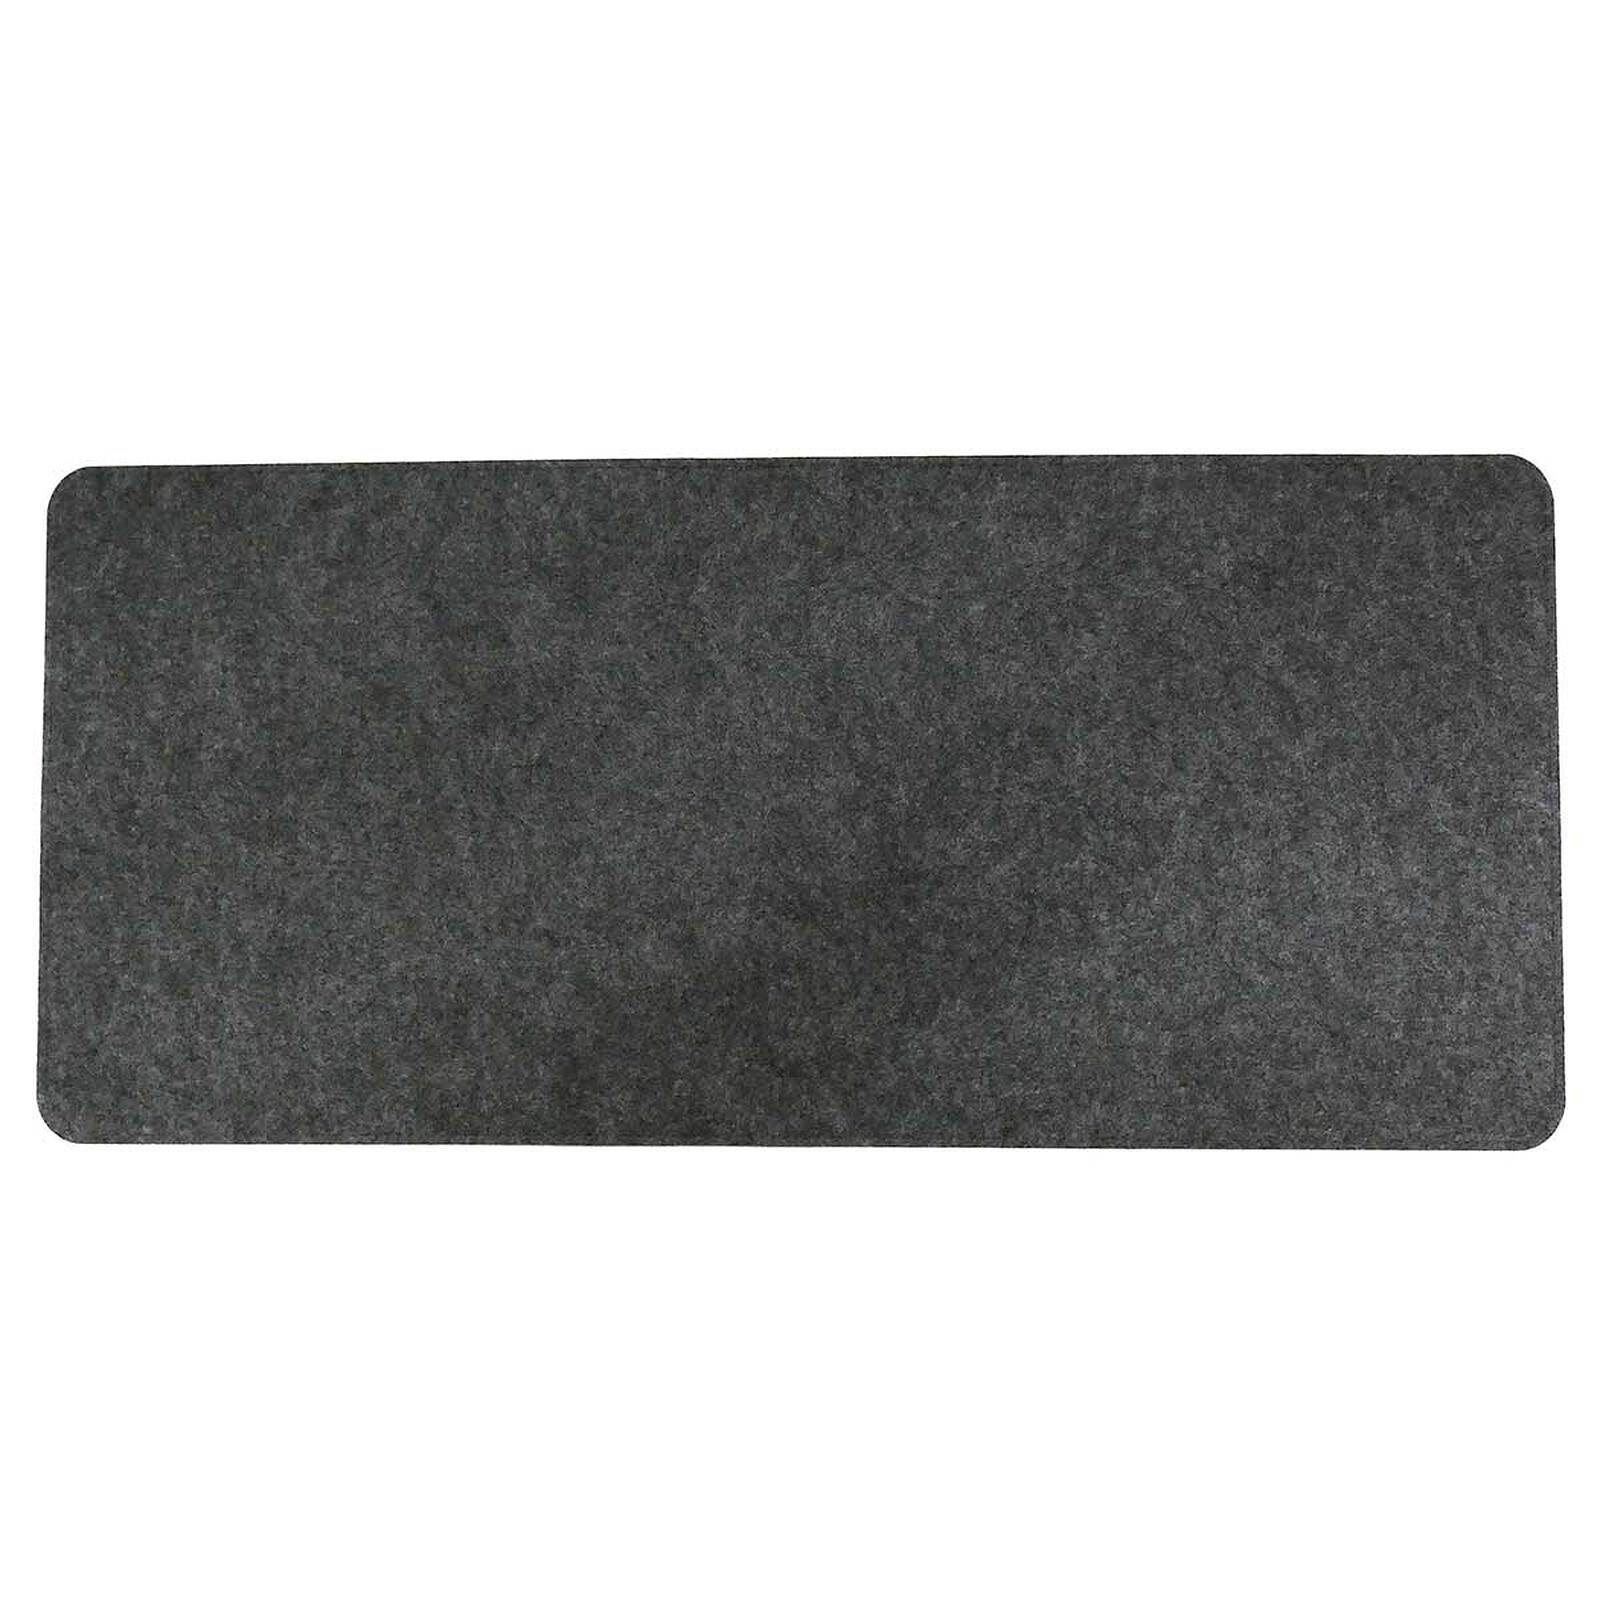 Tapis de souris simple (coloris gris) - Tapis de souris - Garantie